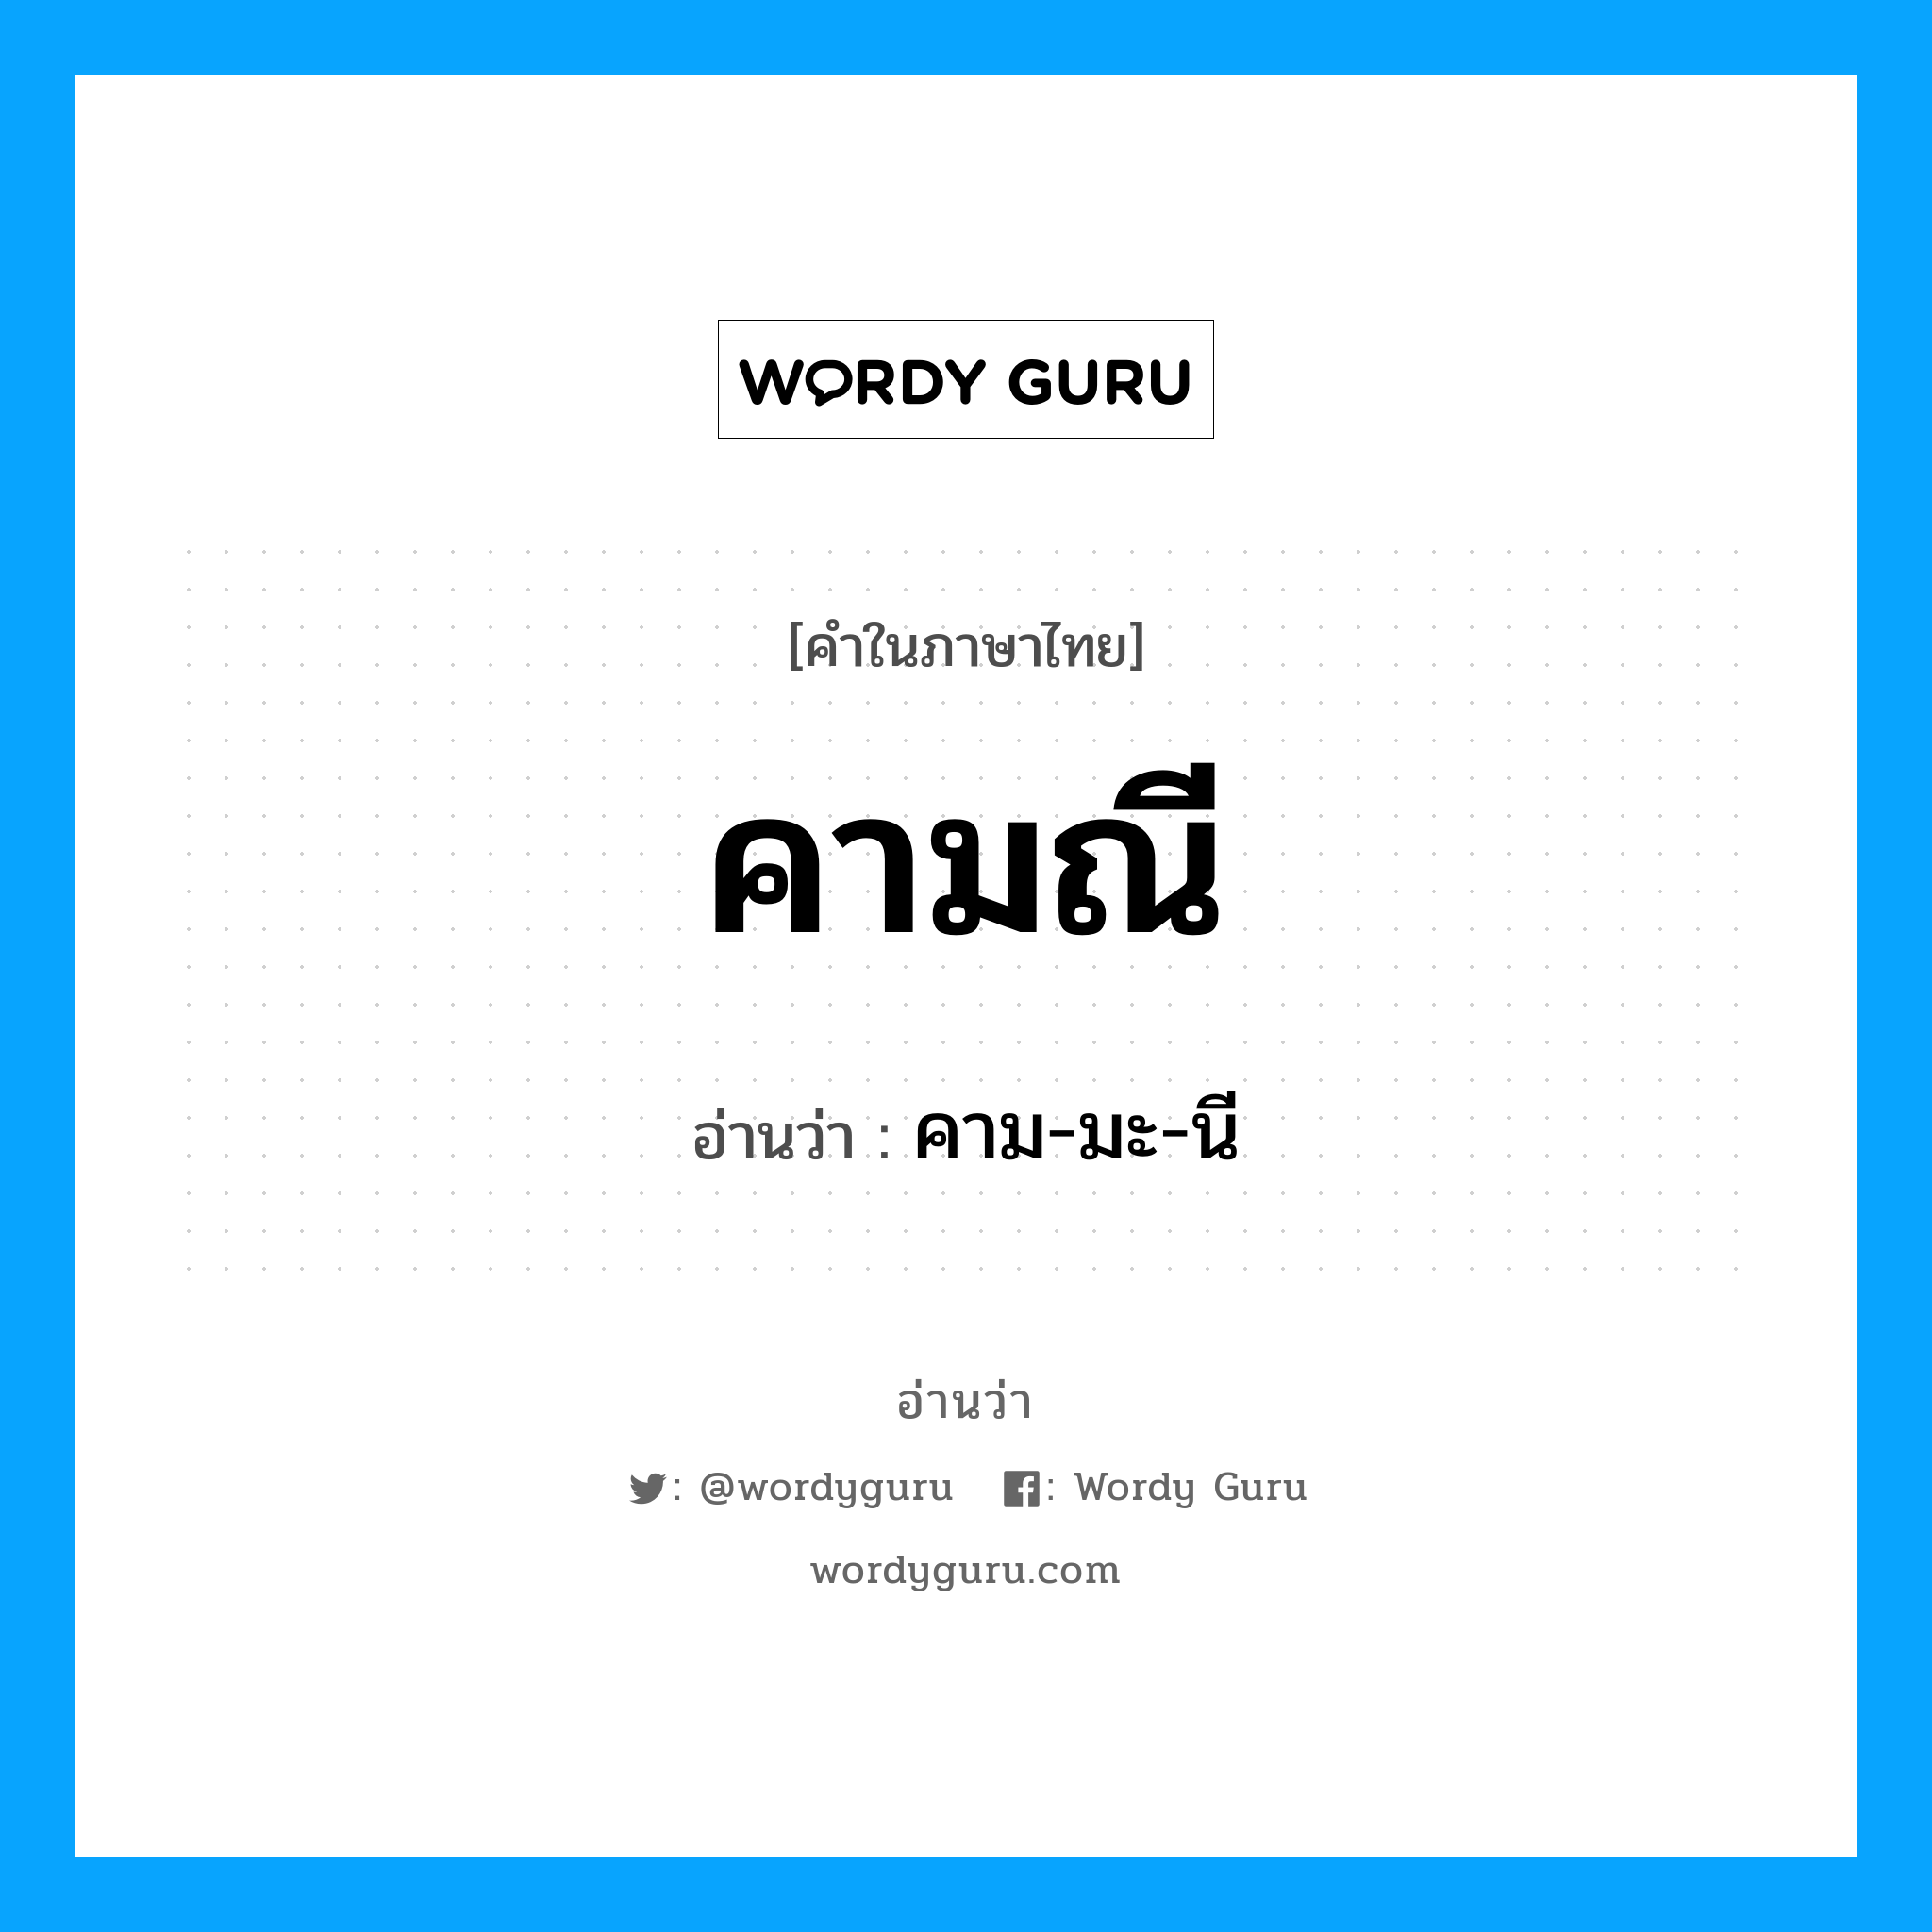 คาม-มะ-นี เป็นคำอ่านของคำไหน?, คำในภาษาไทย คาม-มะ-นี อ่านว่า คามณี